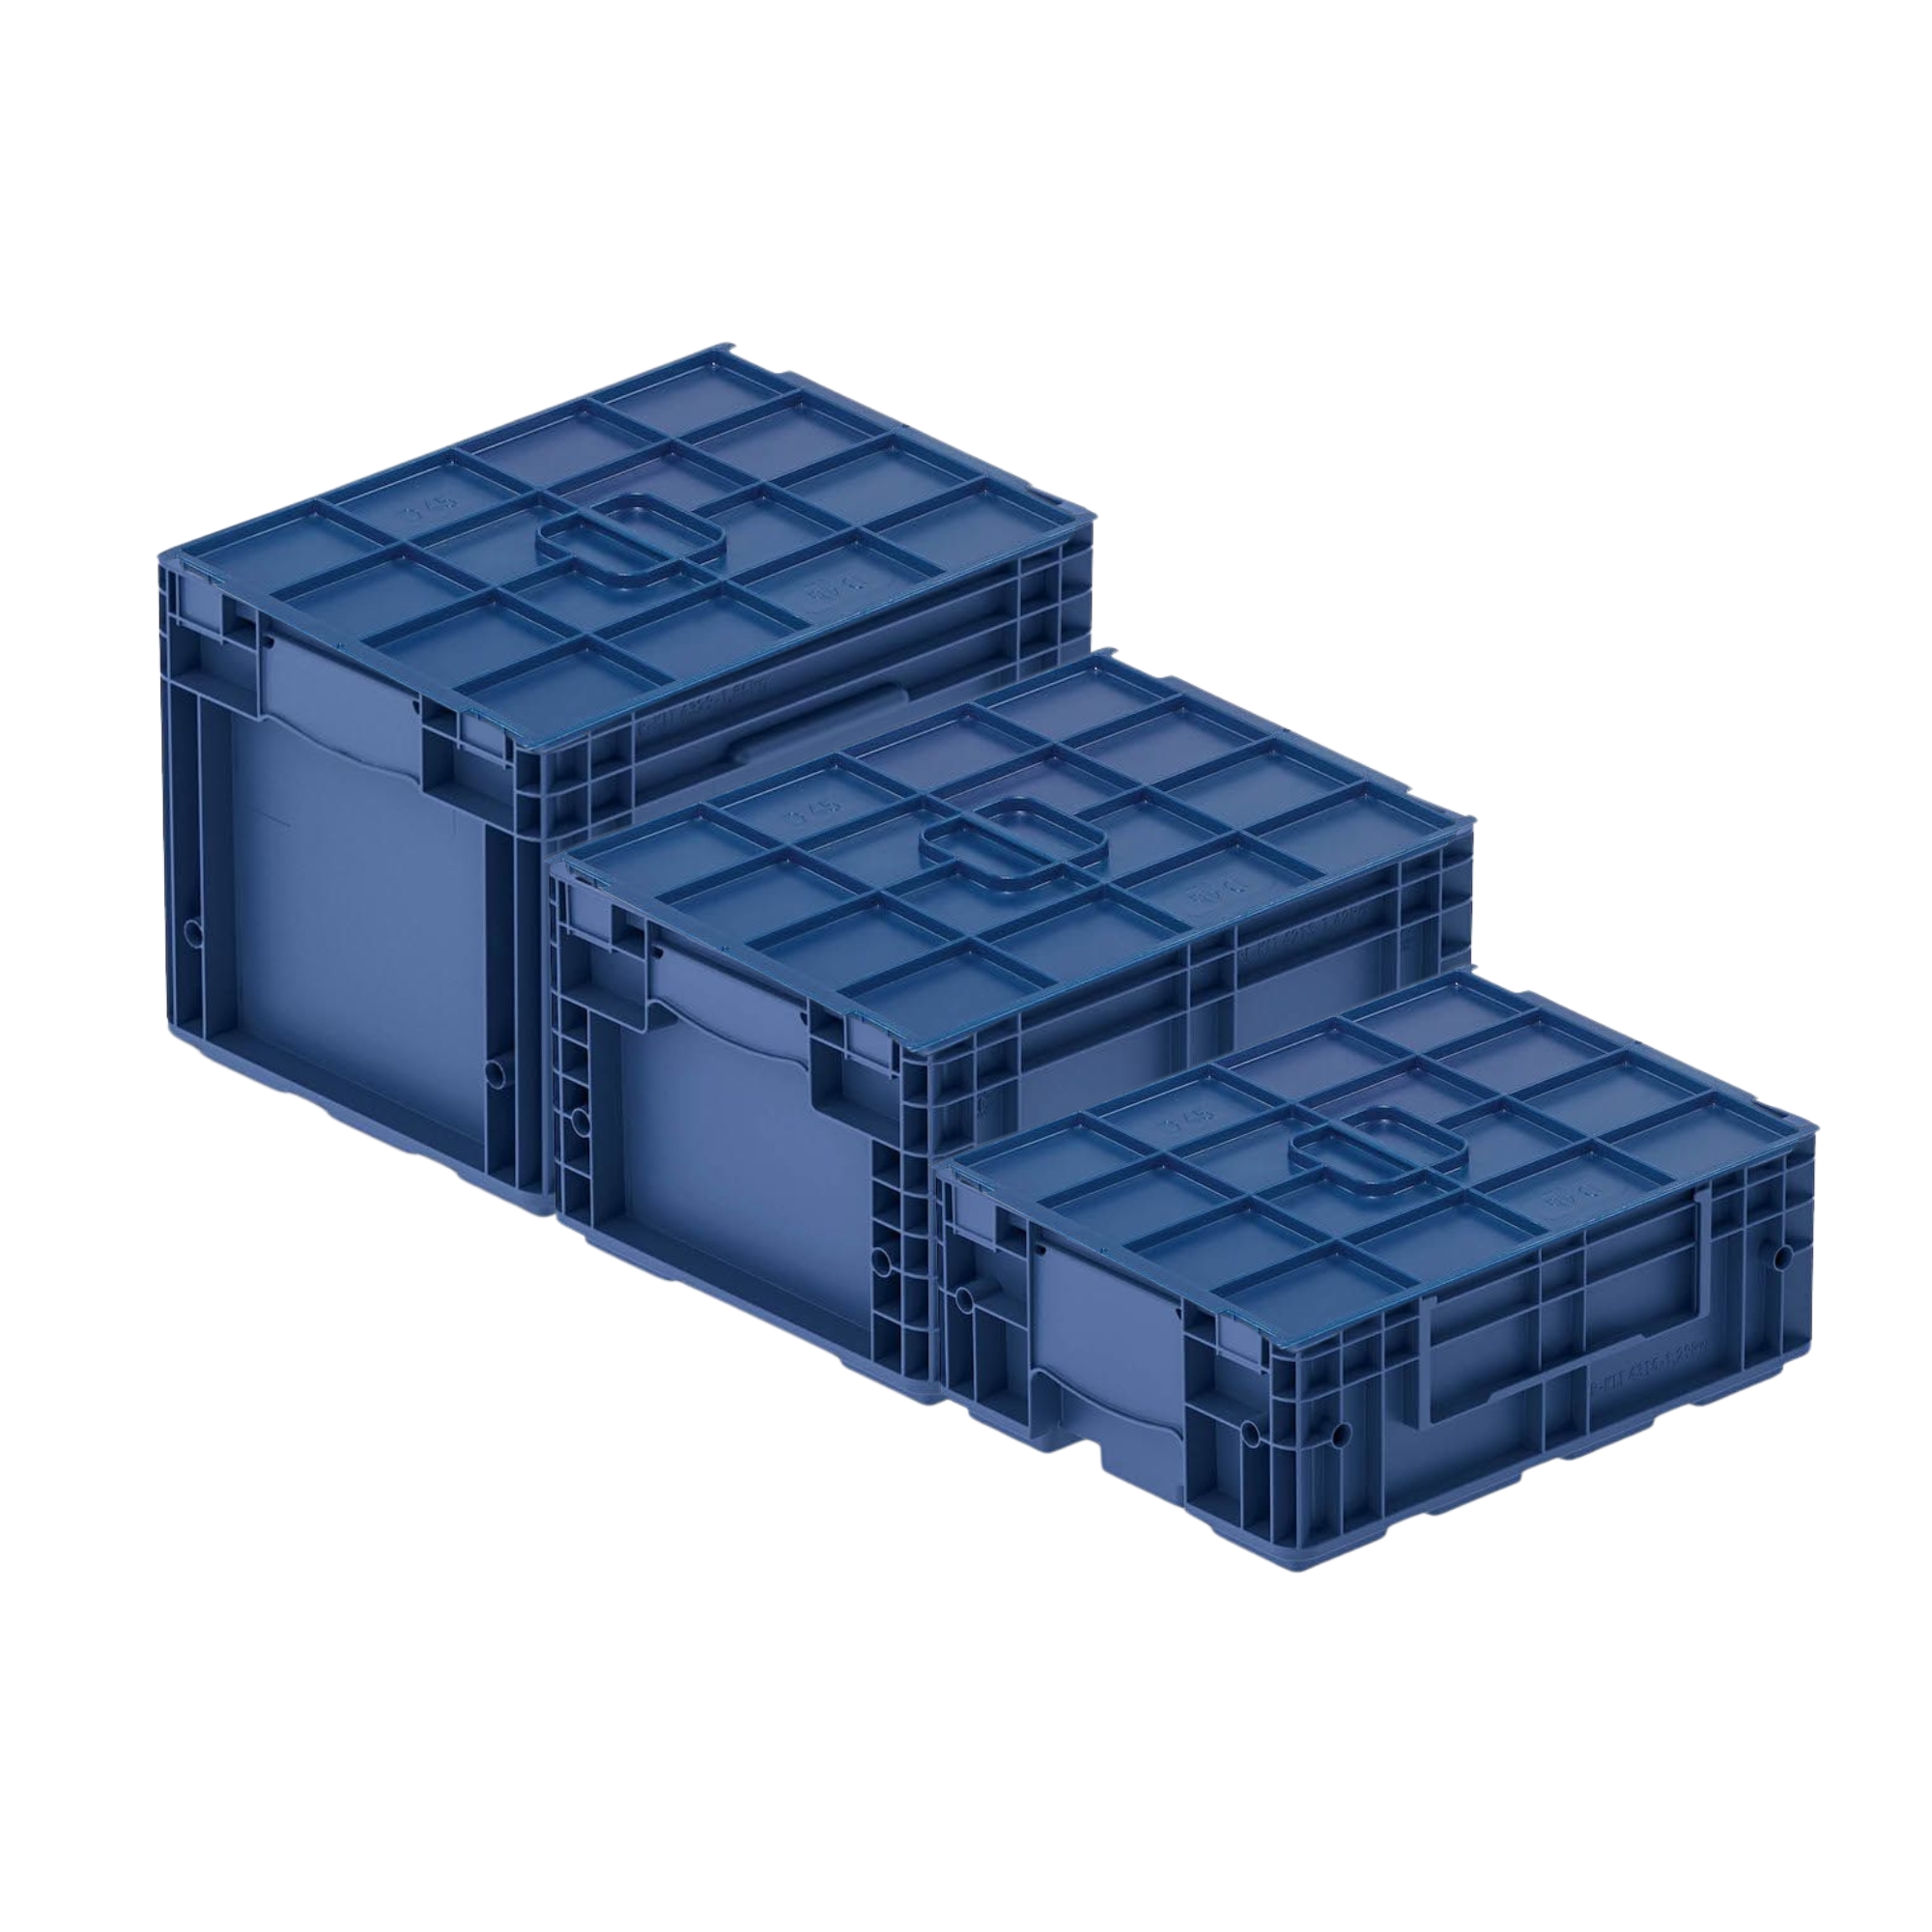 Auflagedeckel für VDA KLT Kleinladungsträger mit Verbundboden | BxT 30x40cm | Abdeckung, Deckel, Plombierbar, KLT, Transportbox, Transportbehälter, Stapelbehälter